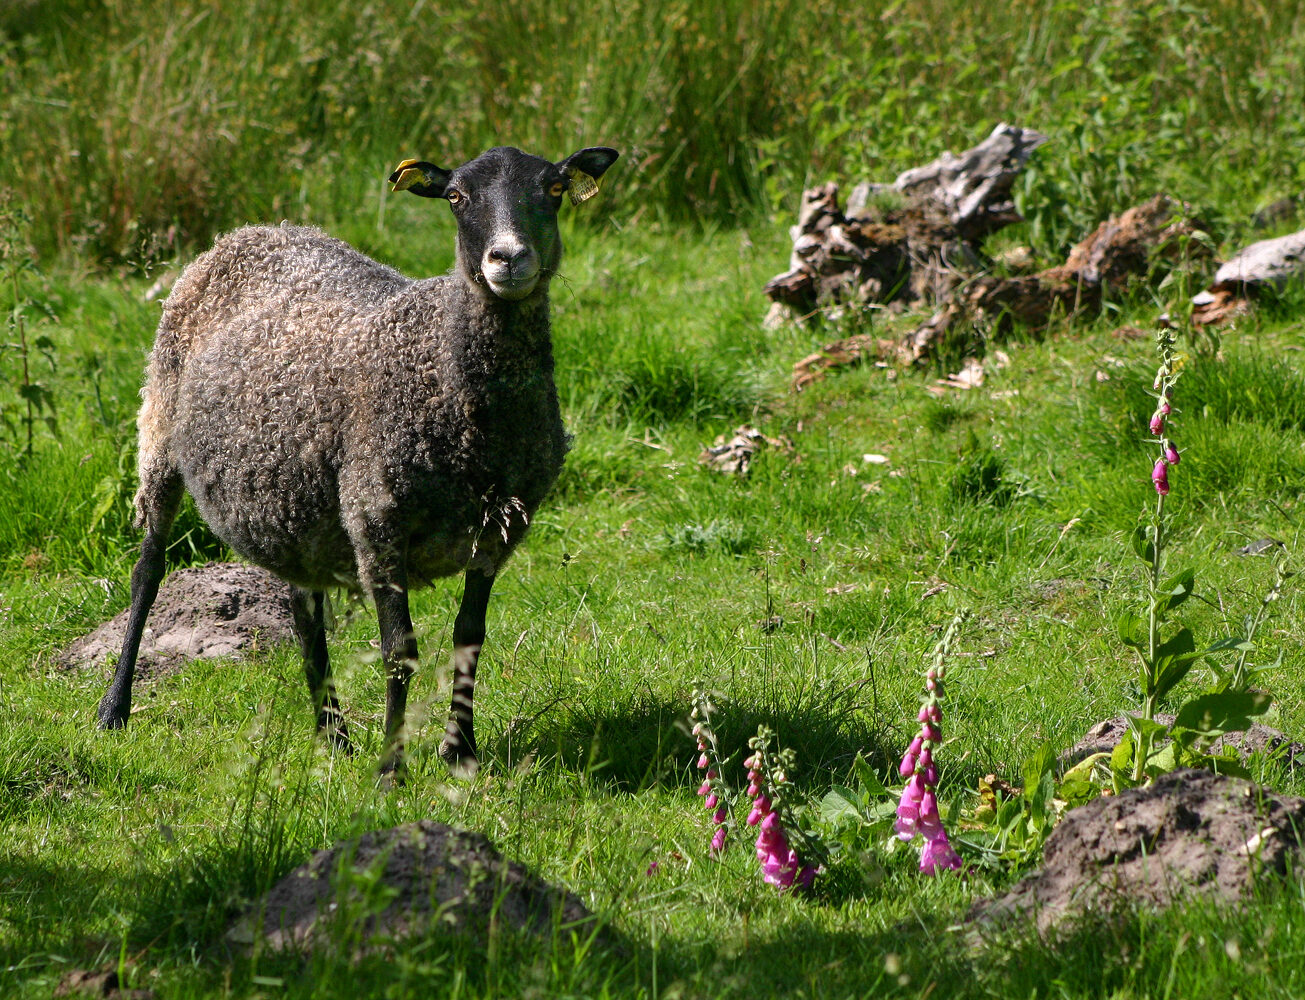 Medelvikt för ett får: en levande vuxen, hur mycket väger en lammkropp